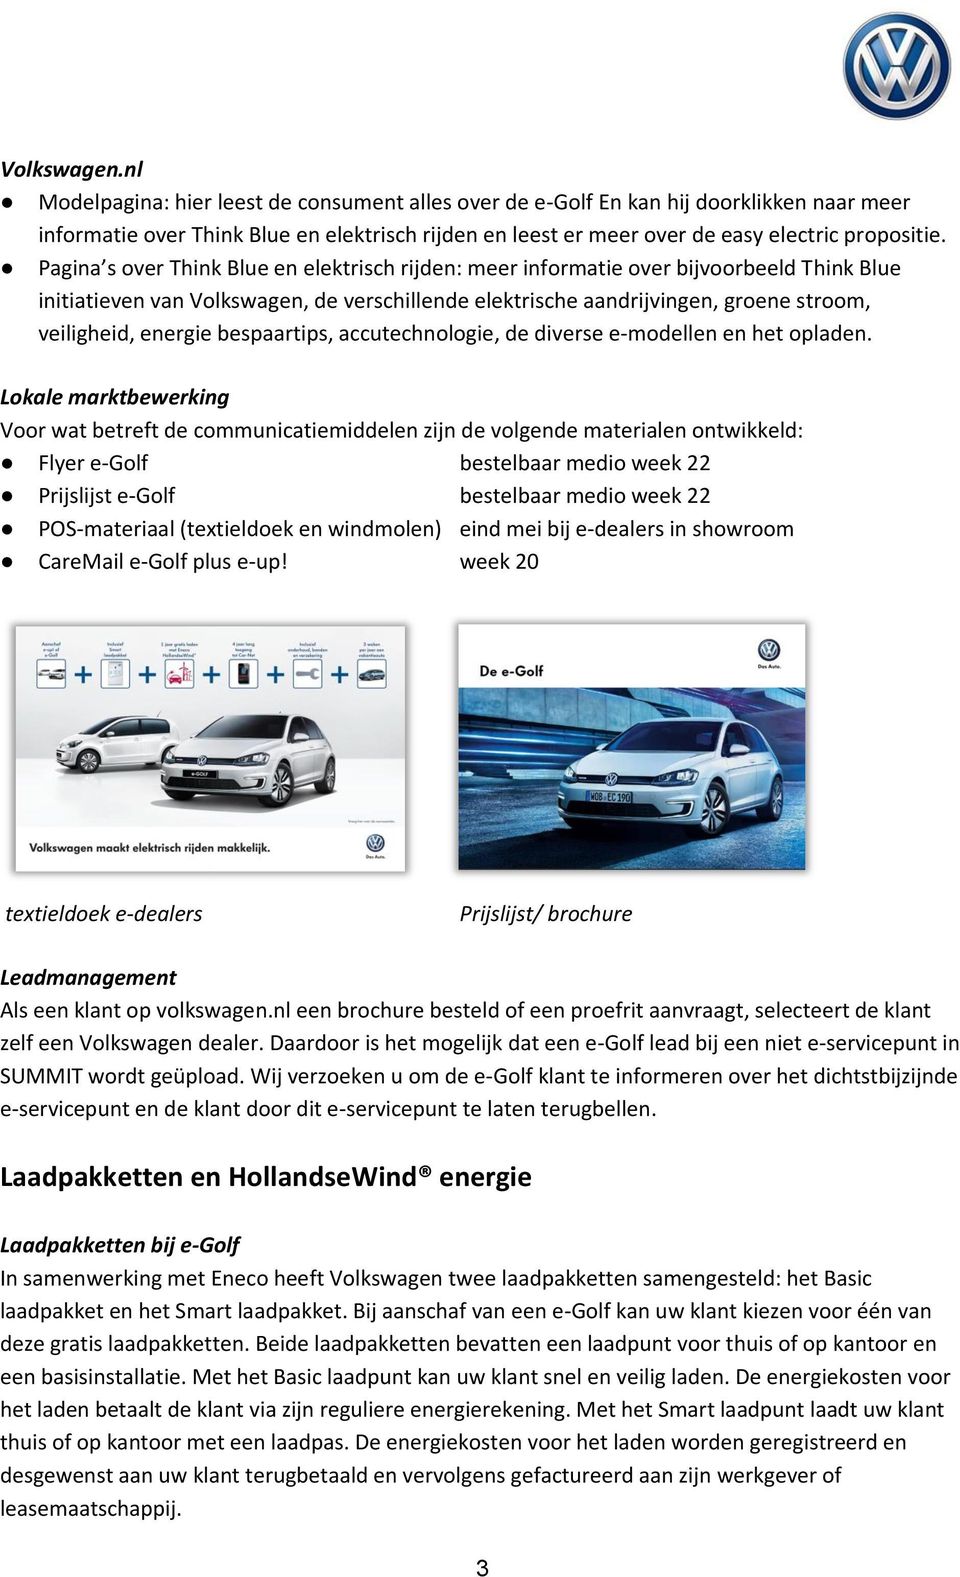 Pagina s over Think Blue en elektrisch rijden: meer informatie over bijvoorbeeld Think Blue initiatieven van Volkswagen, de verschillende elektrische aandrijvingen, groene stroom, veiligheid, energie